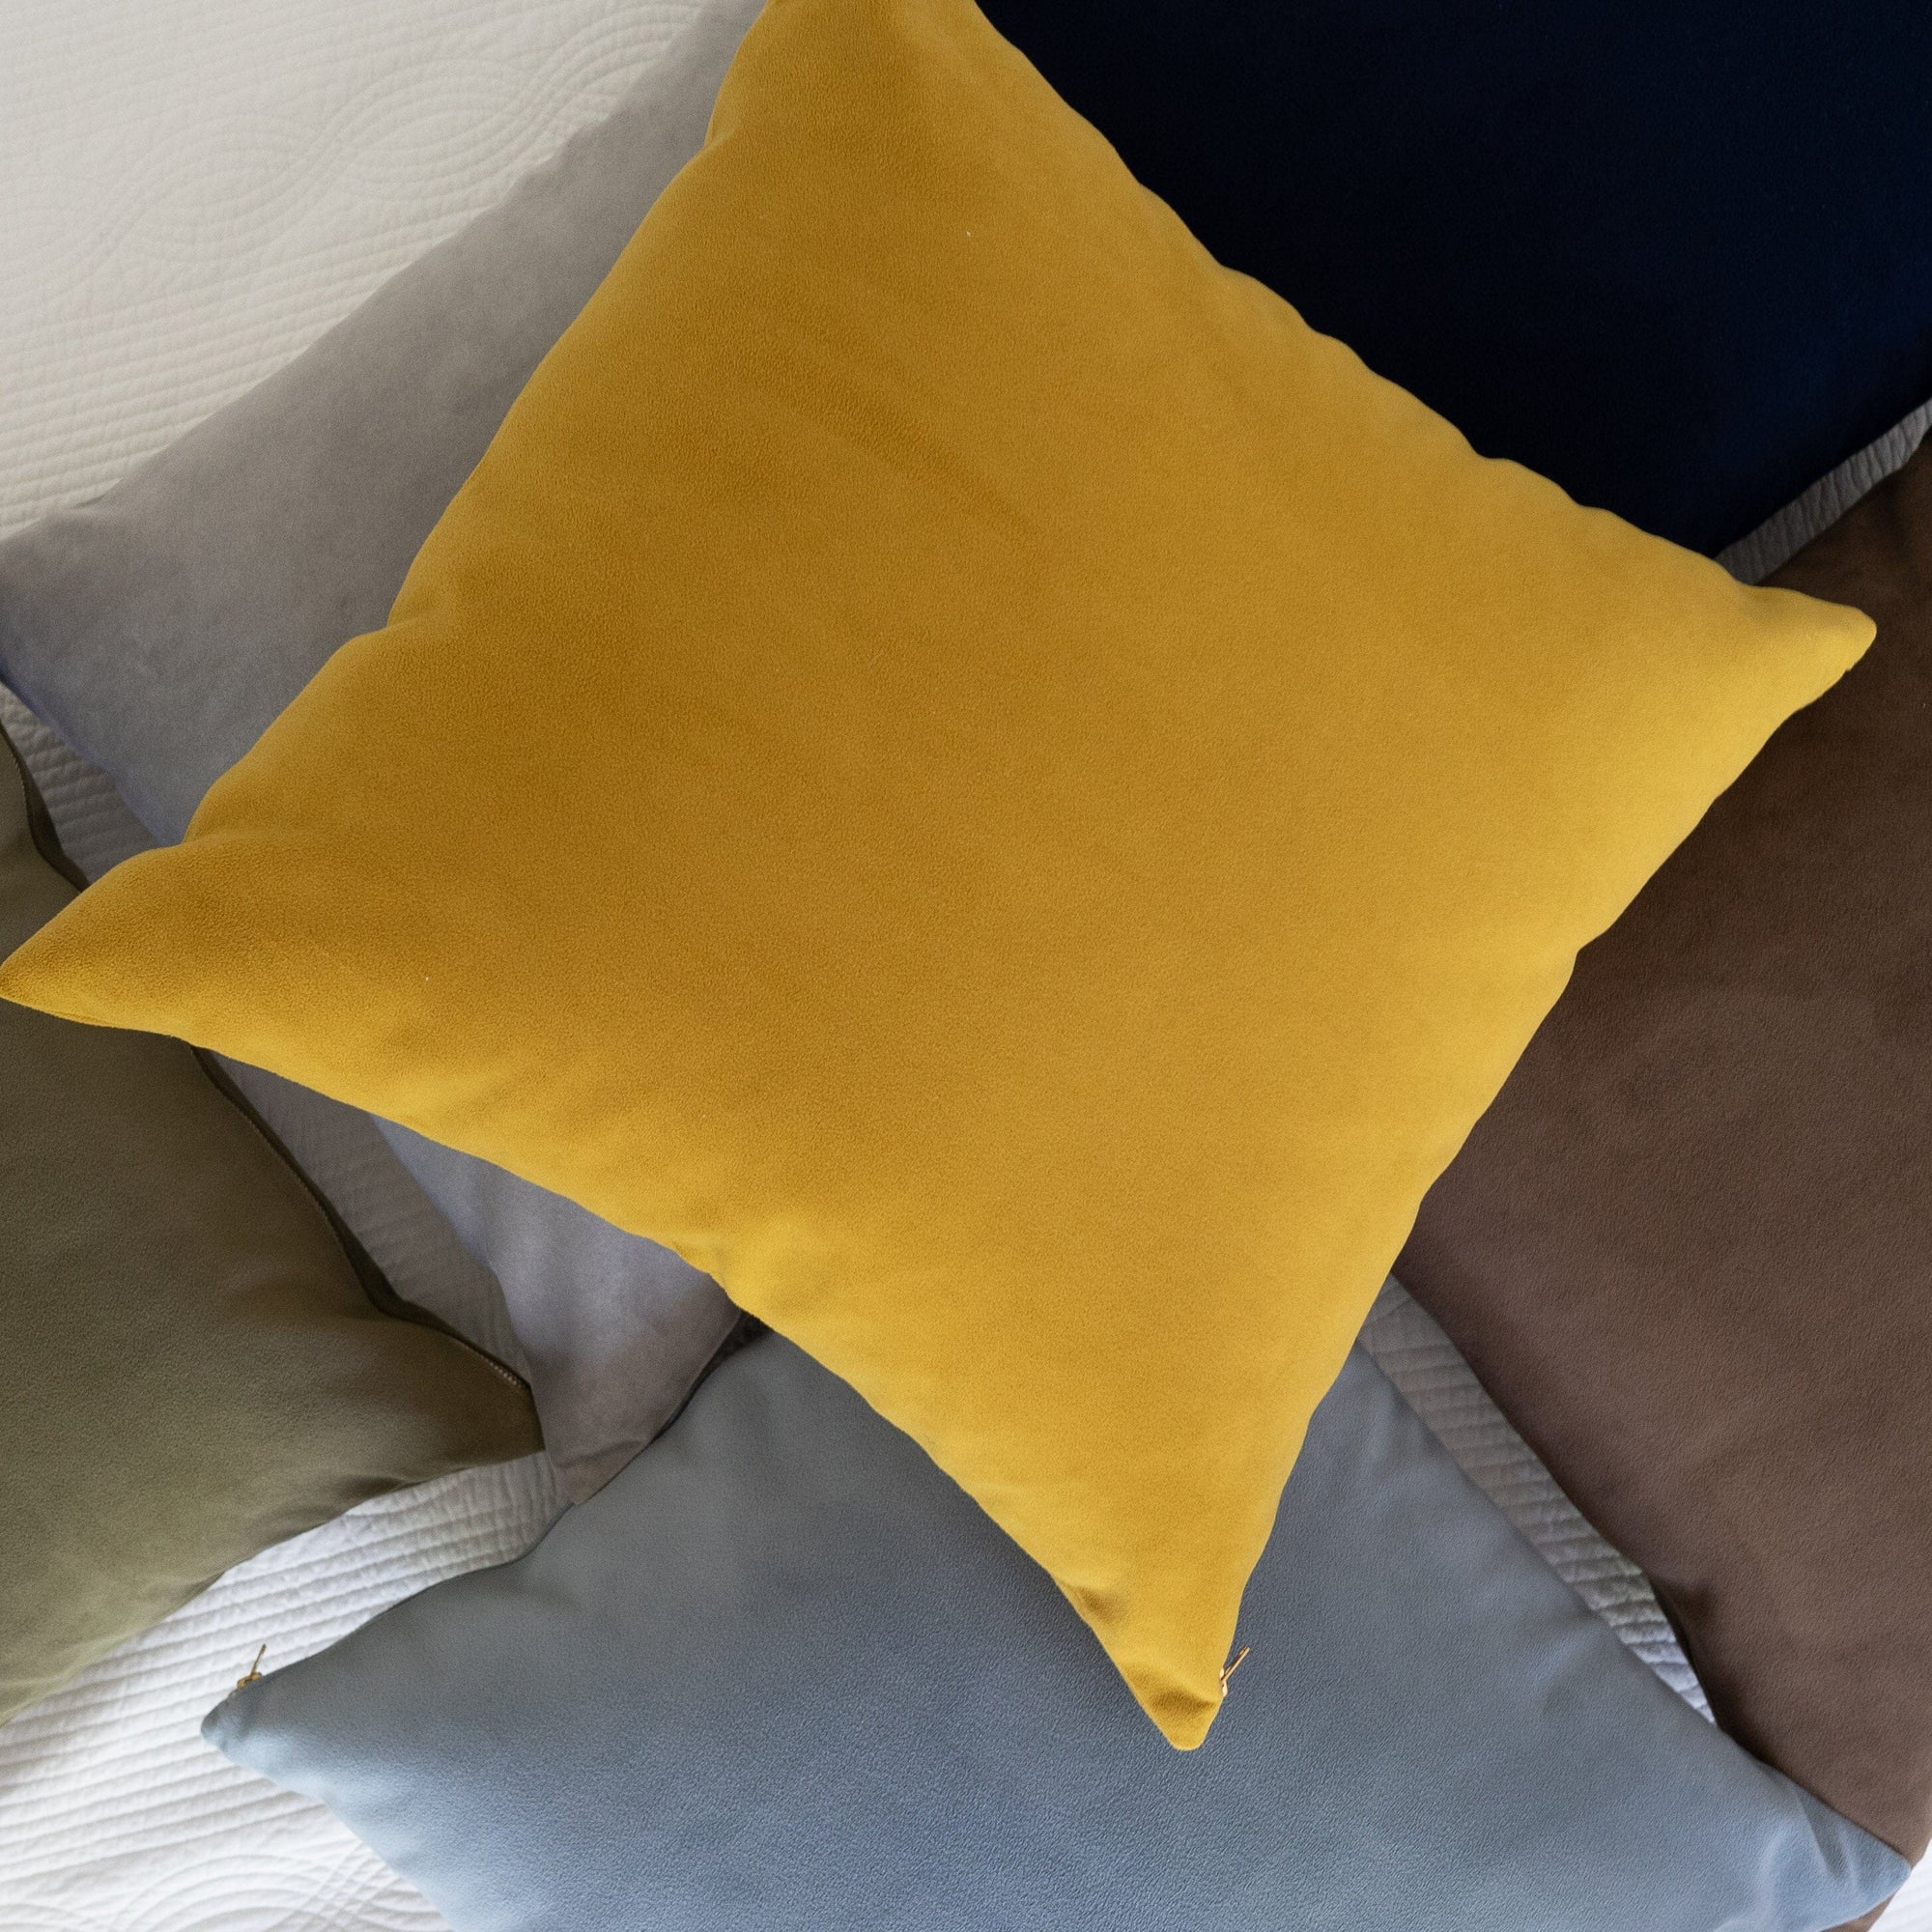 Royal Velvet Pillow - Ochre 20" Pillows 